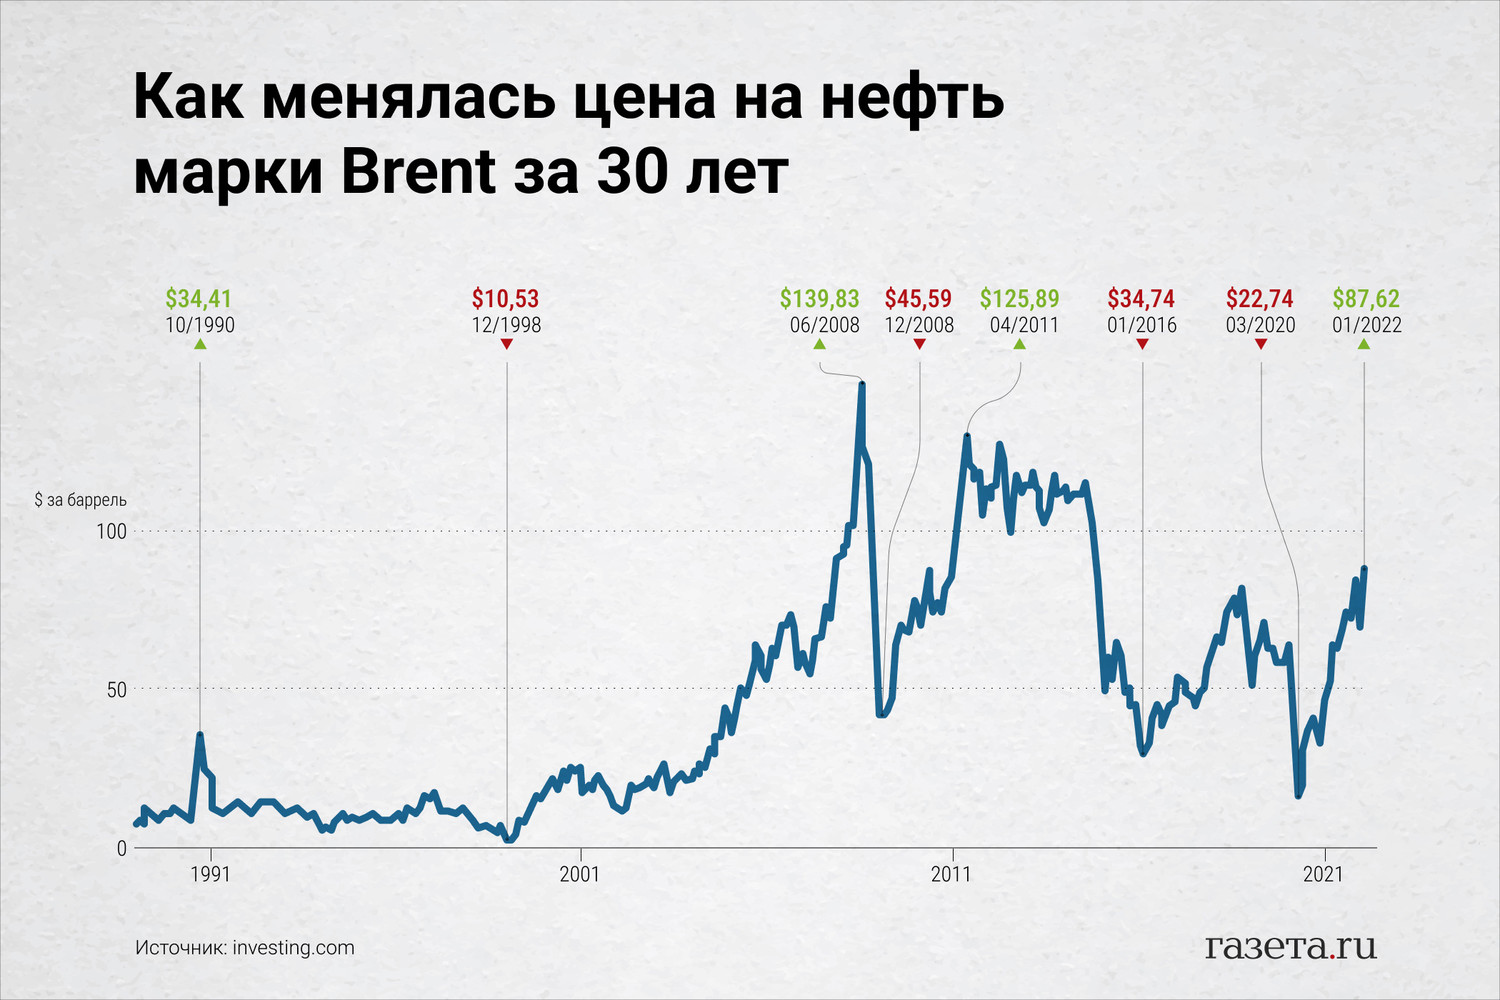 Сколько нефти в россии в баррелях. Нефть цена. Фьючерс на нефть Brent. Динамика цен на нефть. Цены на нефть по годам.